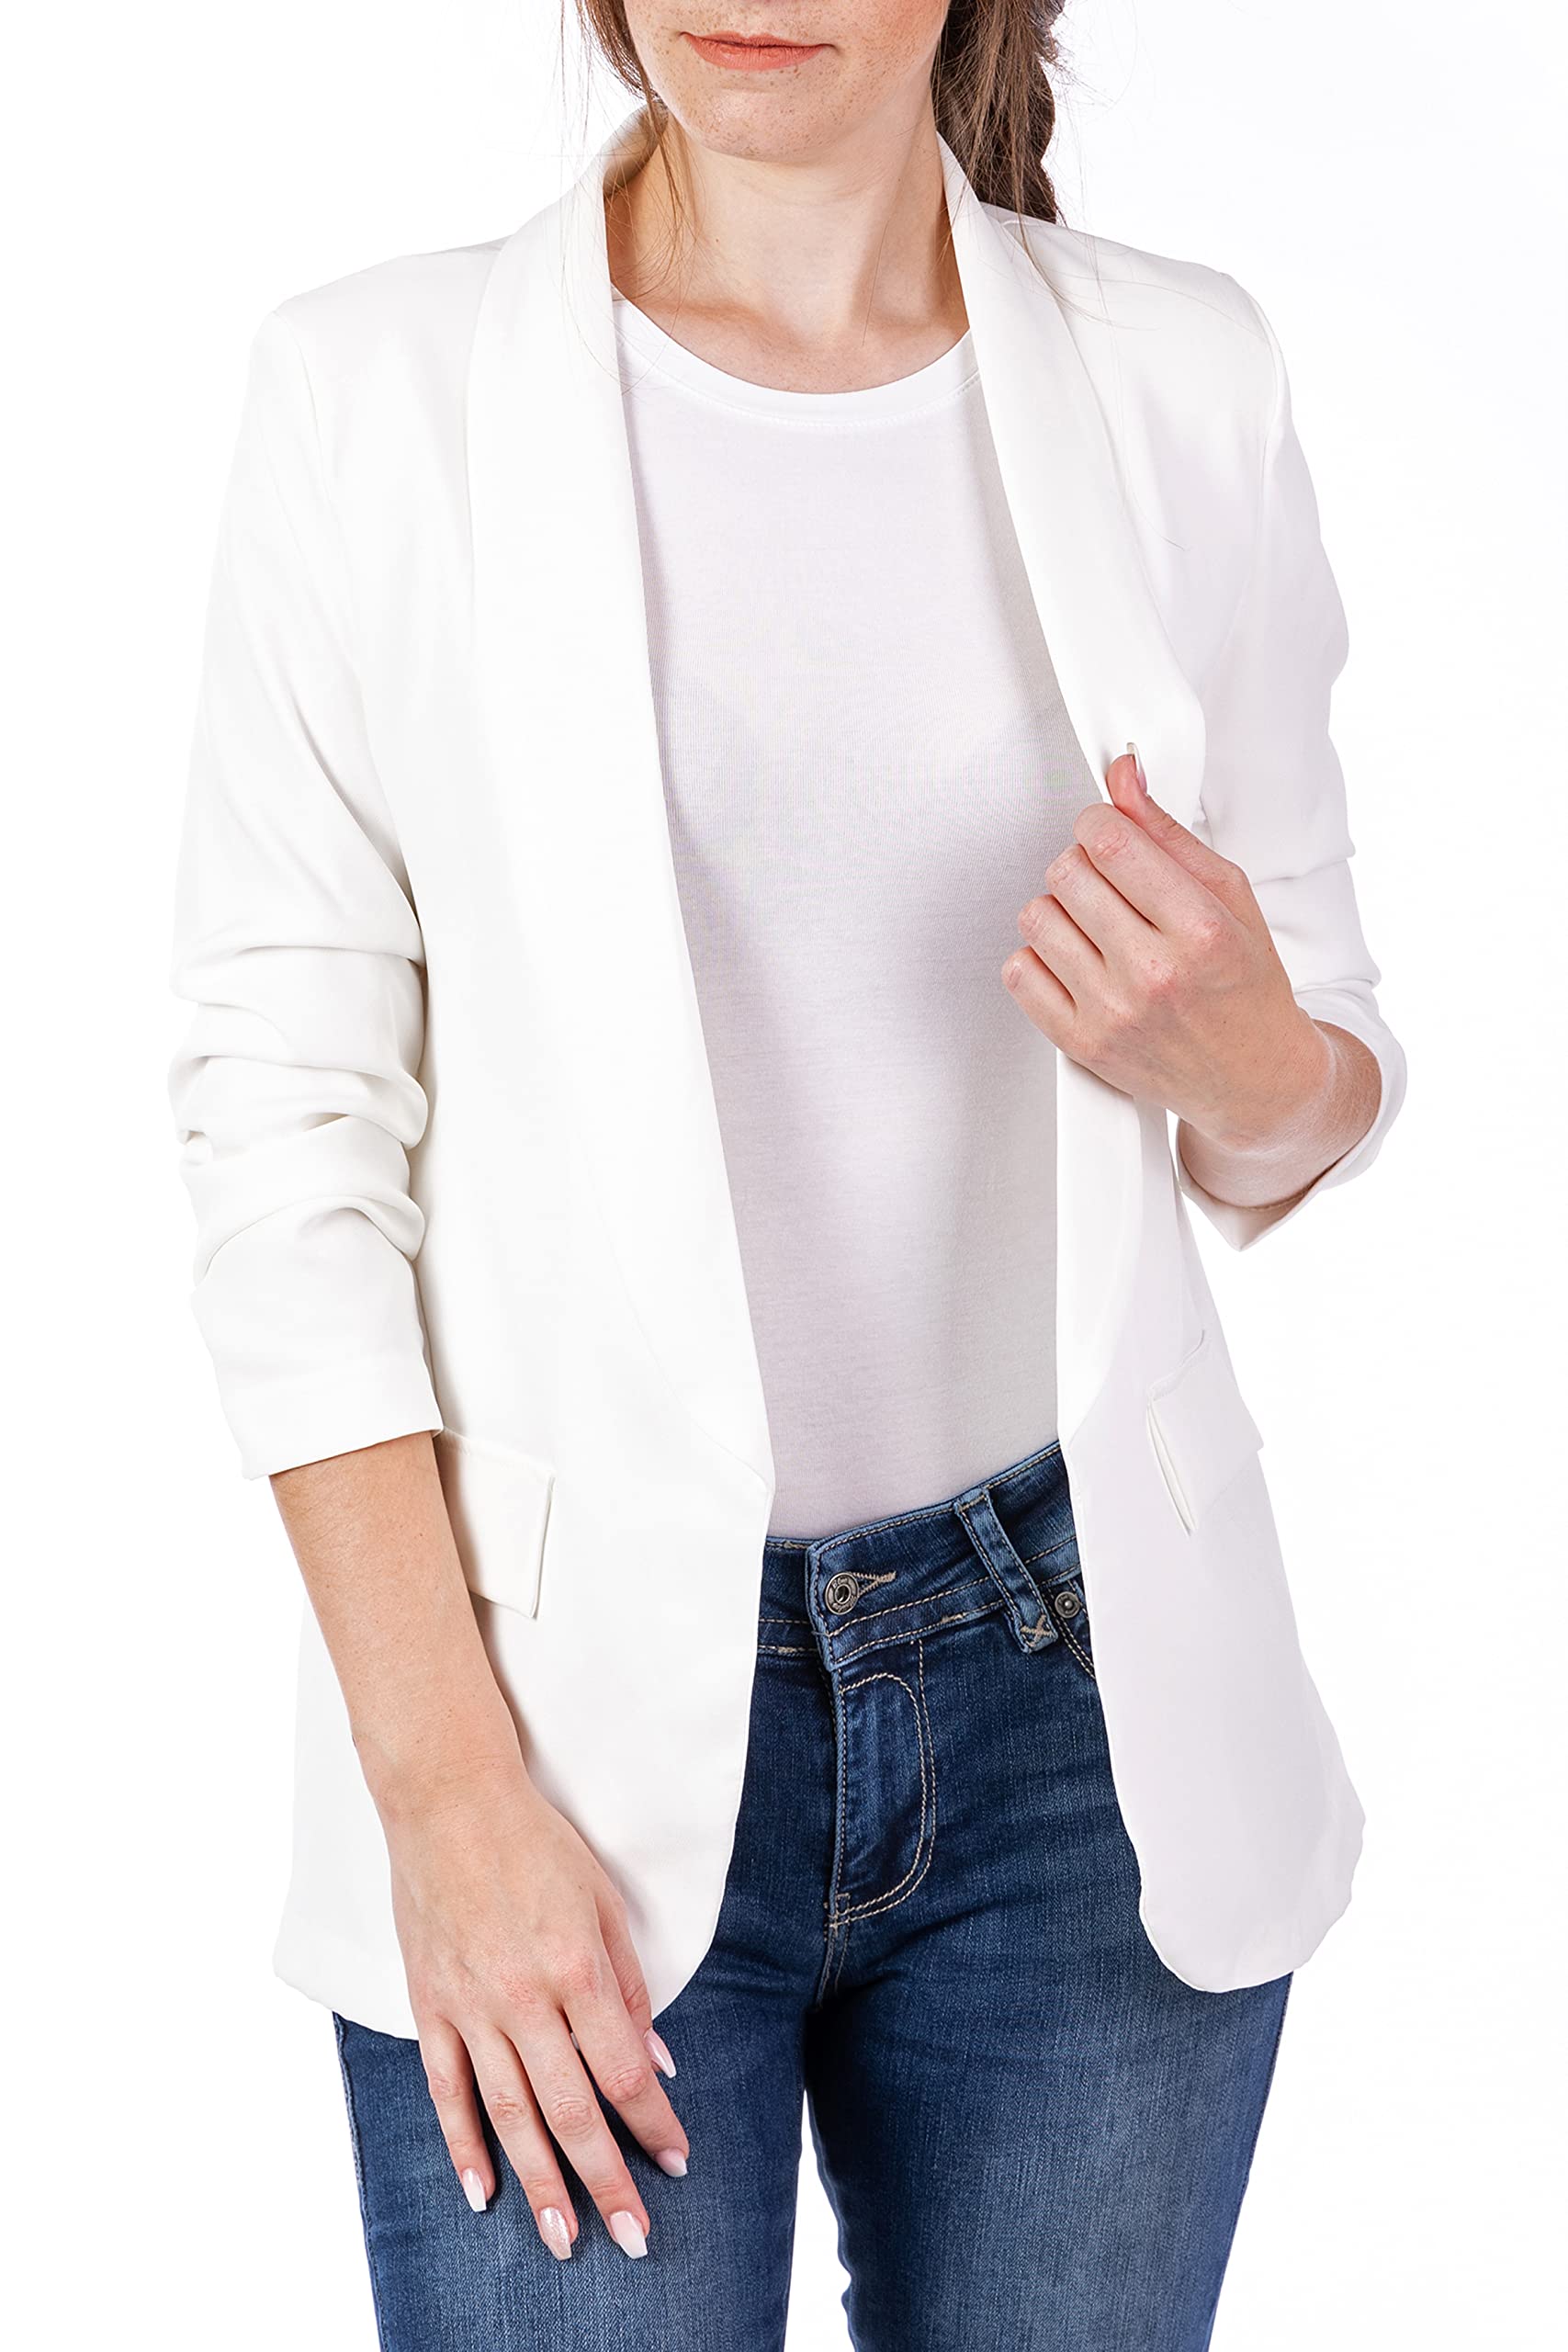 U&F Damen Business Blazer mit gekrempelten 3/4 Ärmeln | sportlich, elegant und modisch | in trendigen Farben mit tailliertem Schnitt | ein leichter Anzug für jeden Anlass Weiß Größe: M